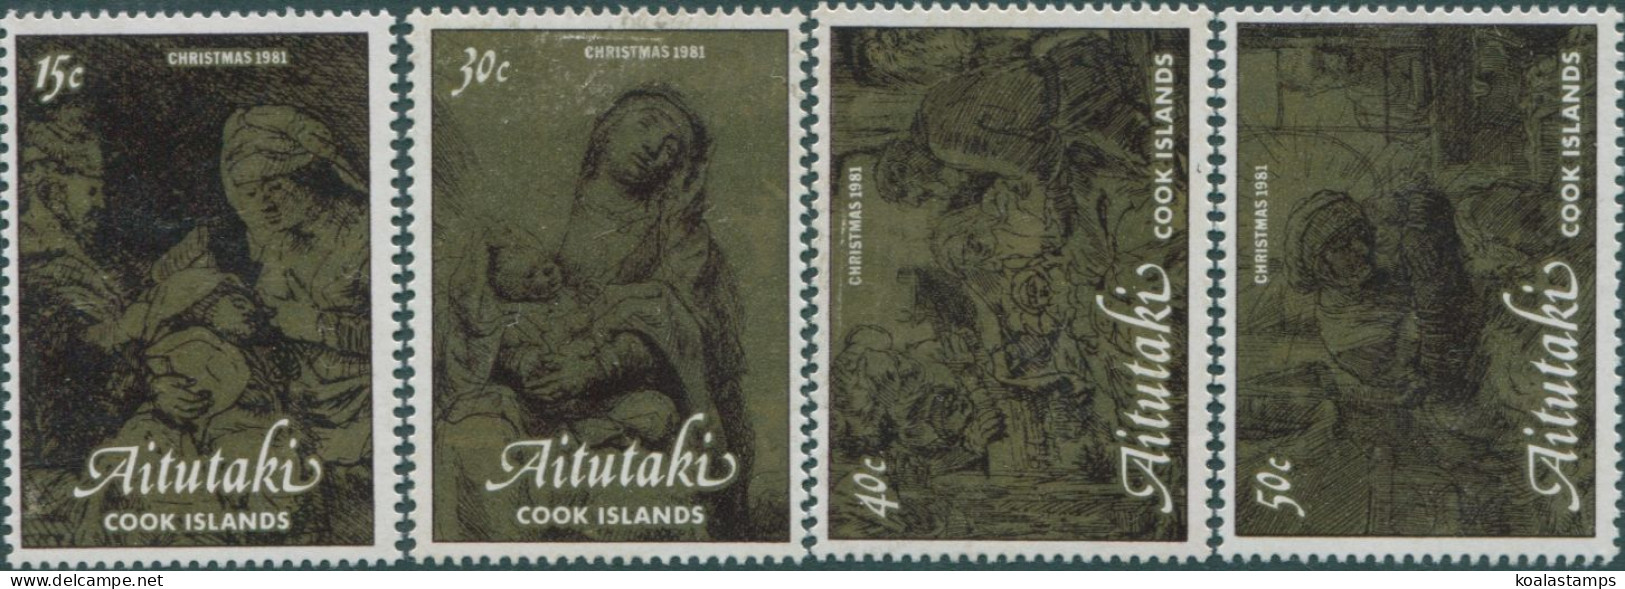 Aitutaki 1981 SG406-409 Christmas Set MNH - Cookinseln